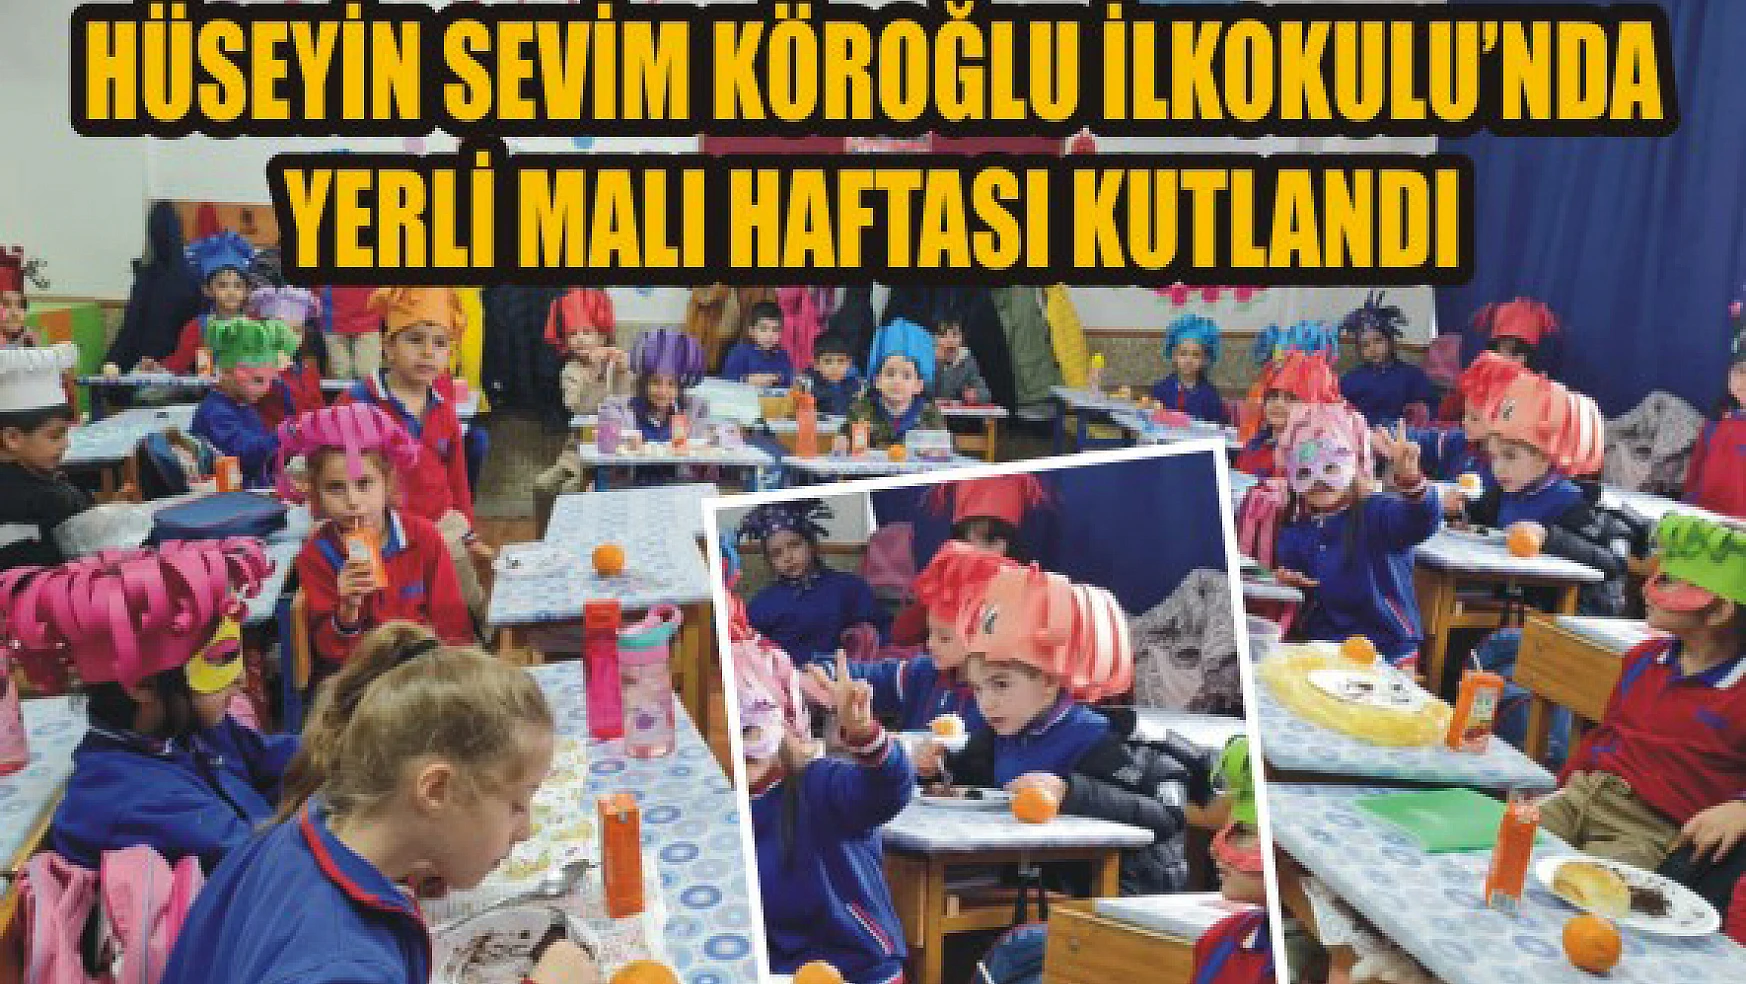 Hüseyin Sevim Köroğlu İlkokulu'nda yerli malı haftası kutlandı